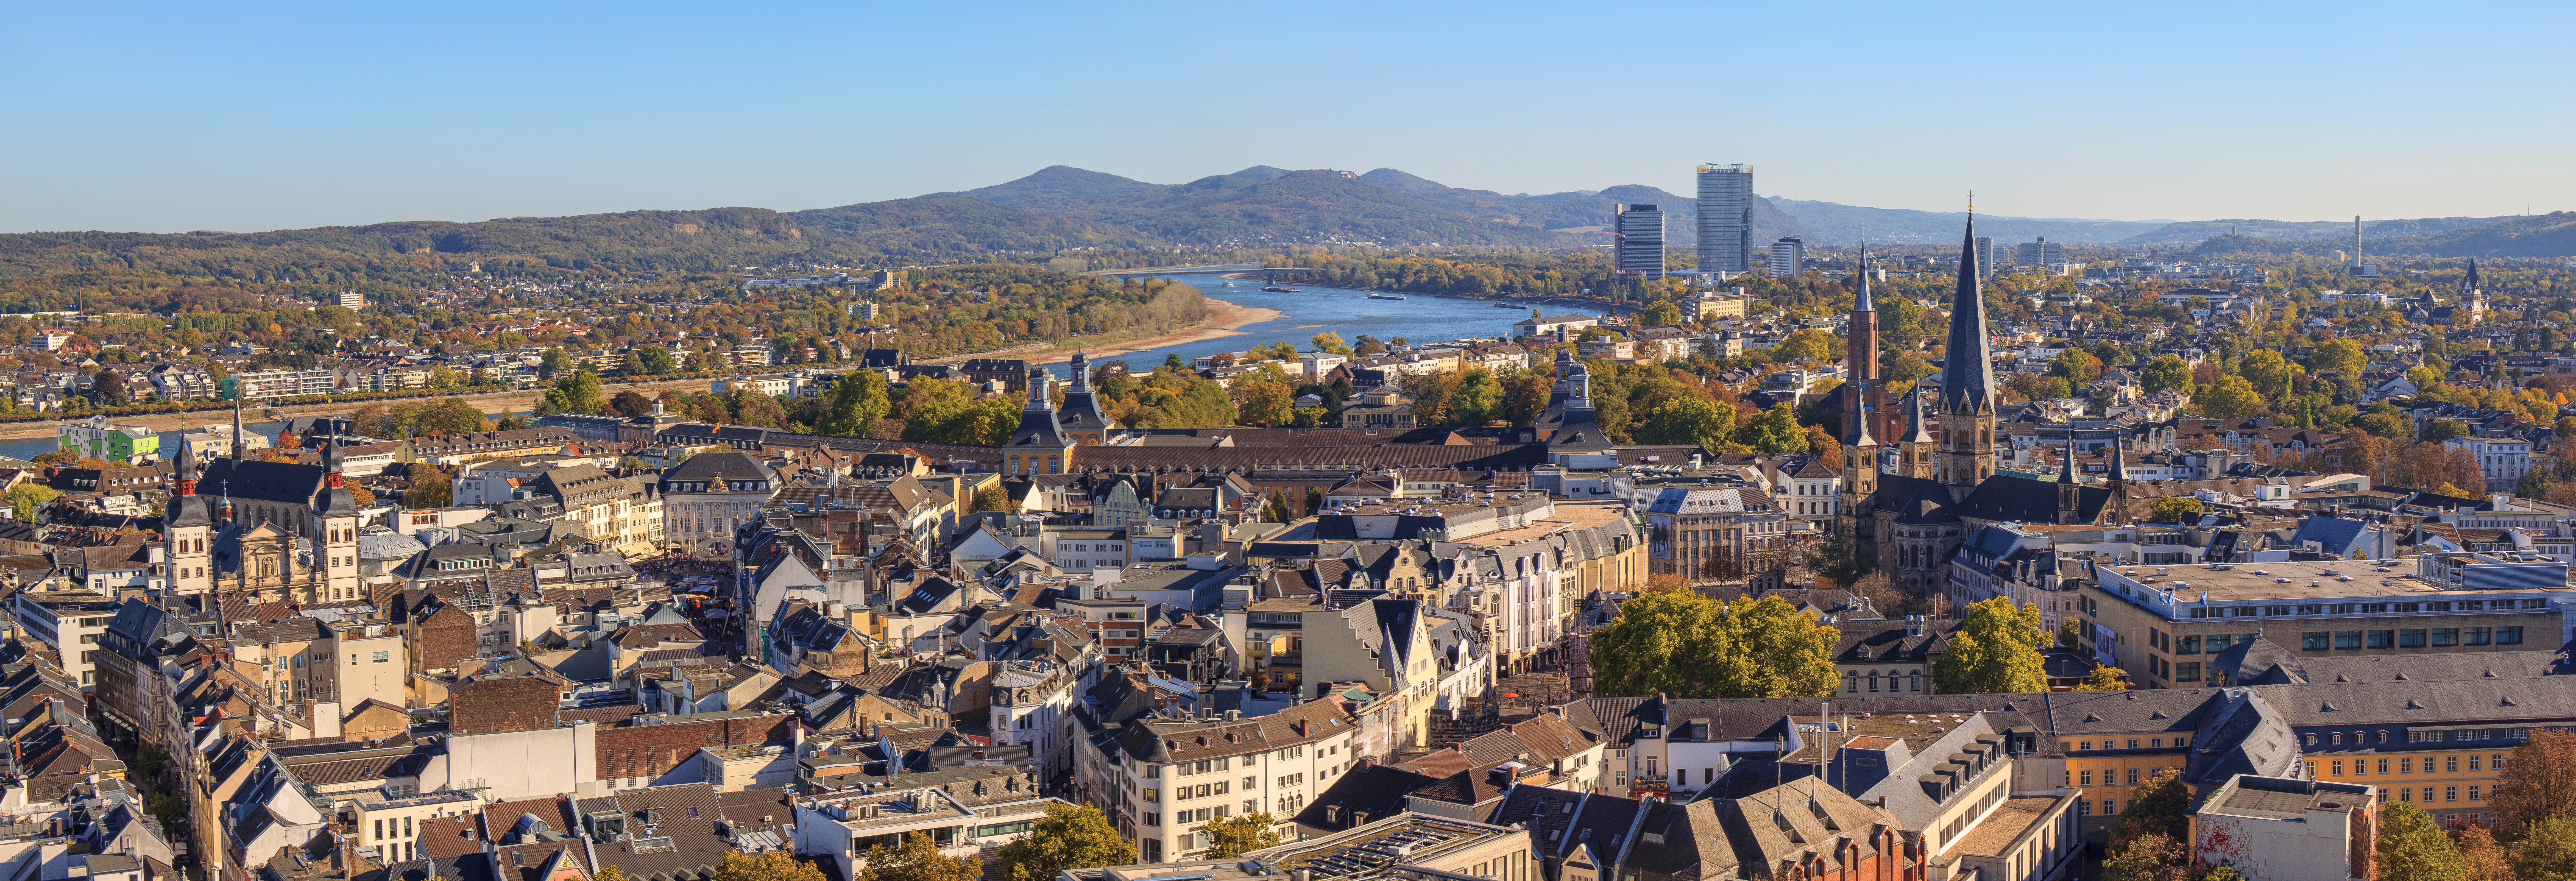 Sie suchen nach einem Immobilienmakler für Bonn, der Ihr Haus oder Wohnung sicher verkaufen kann?